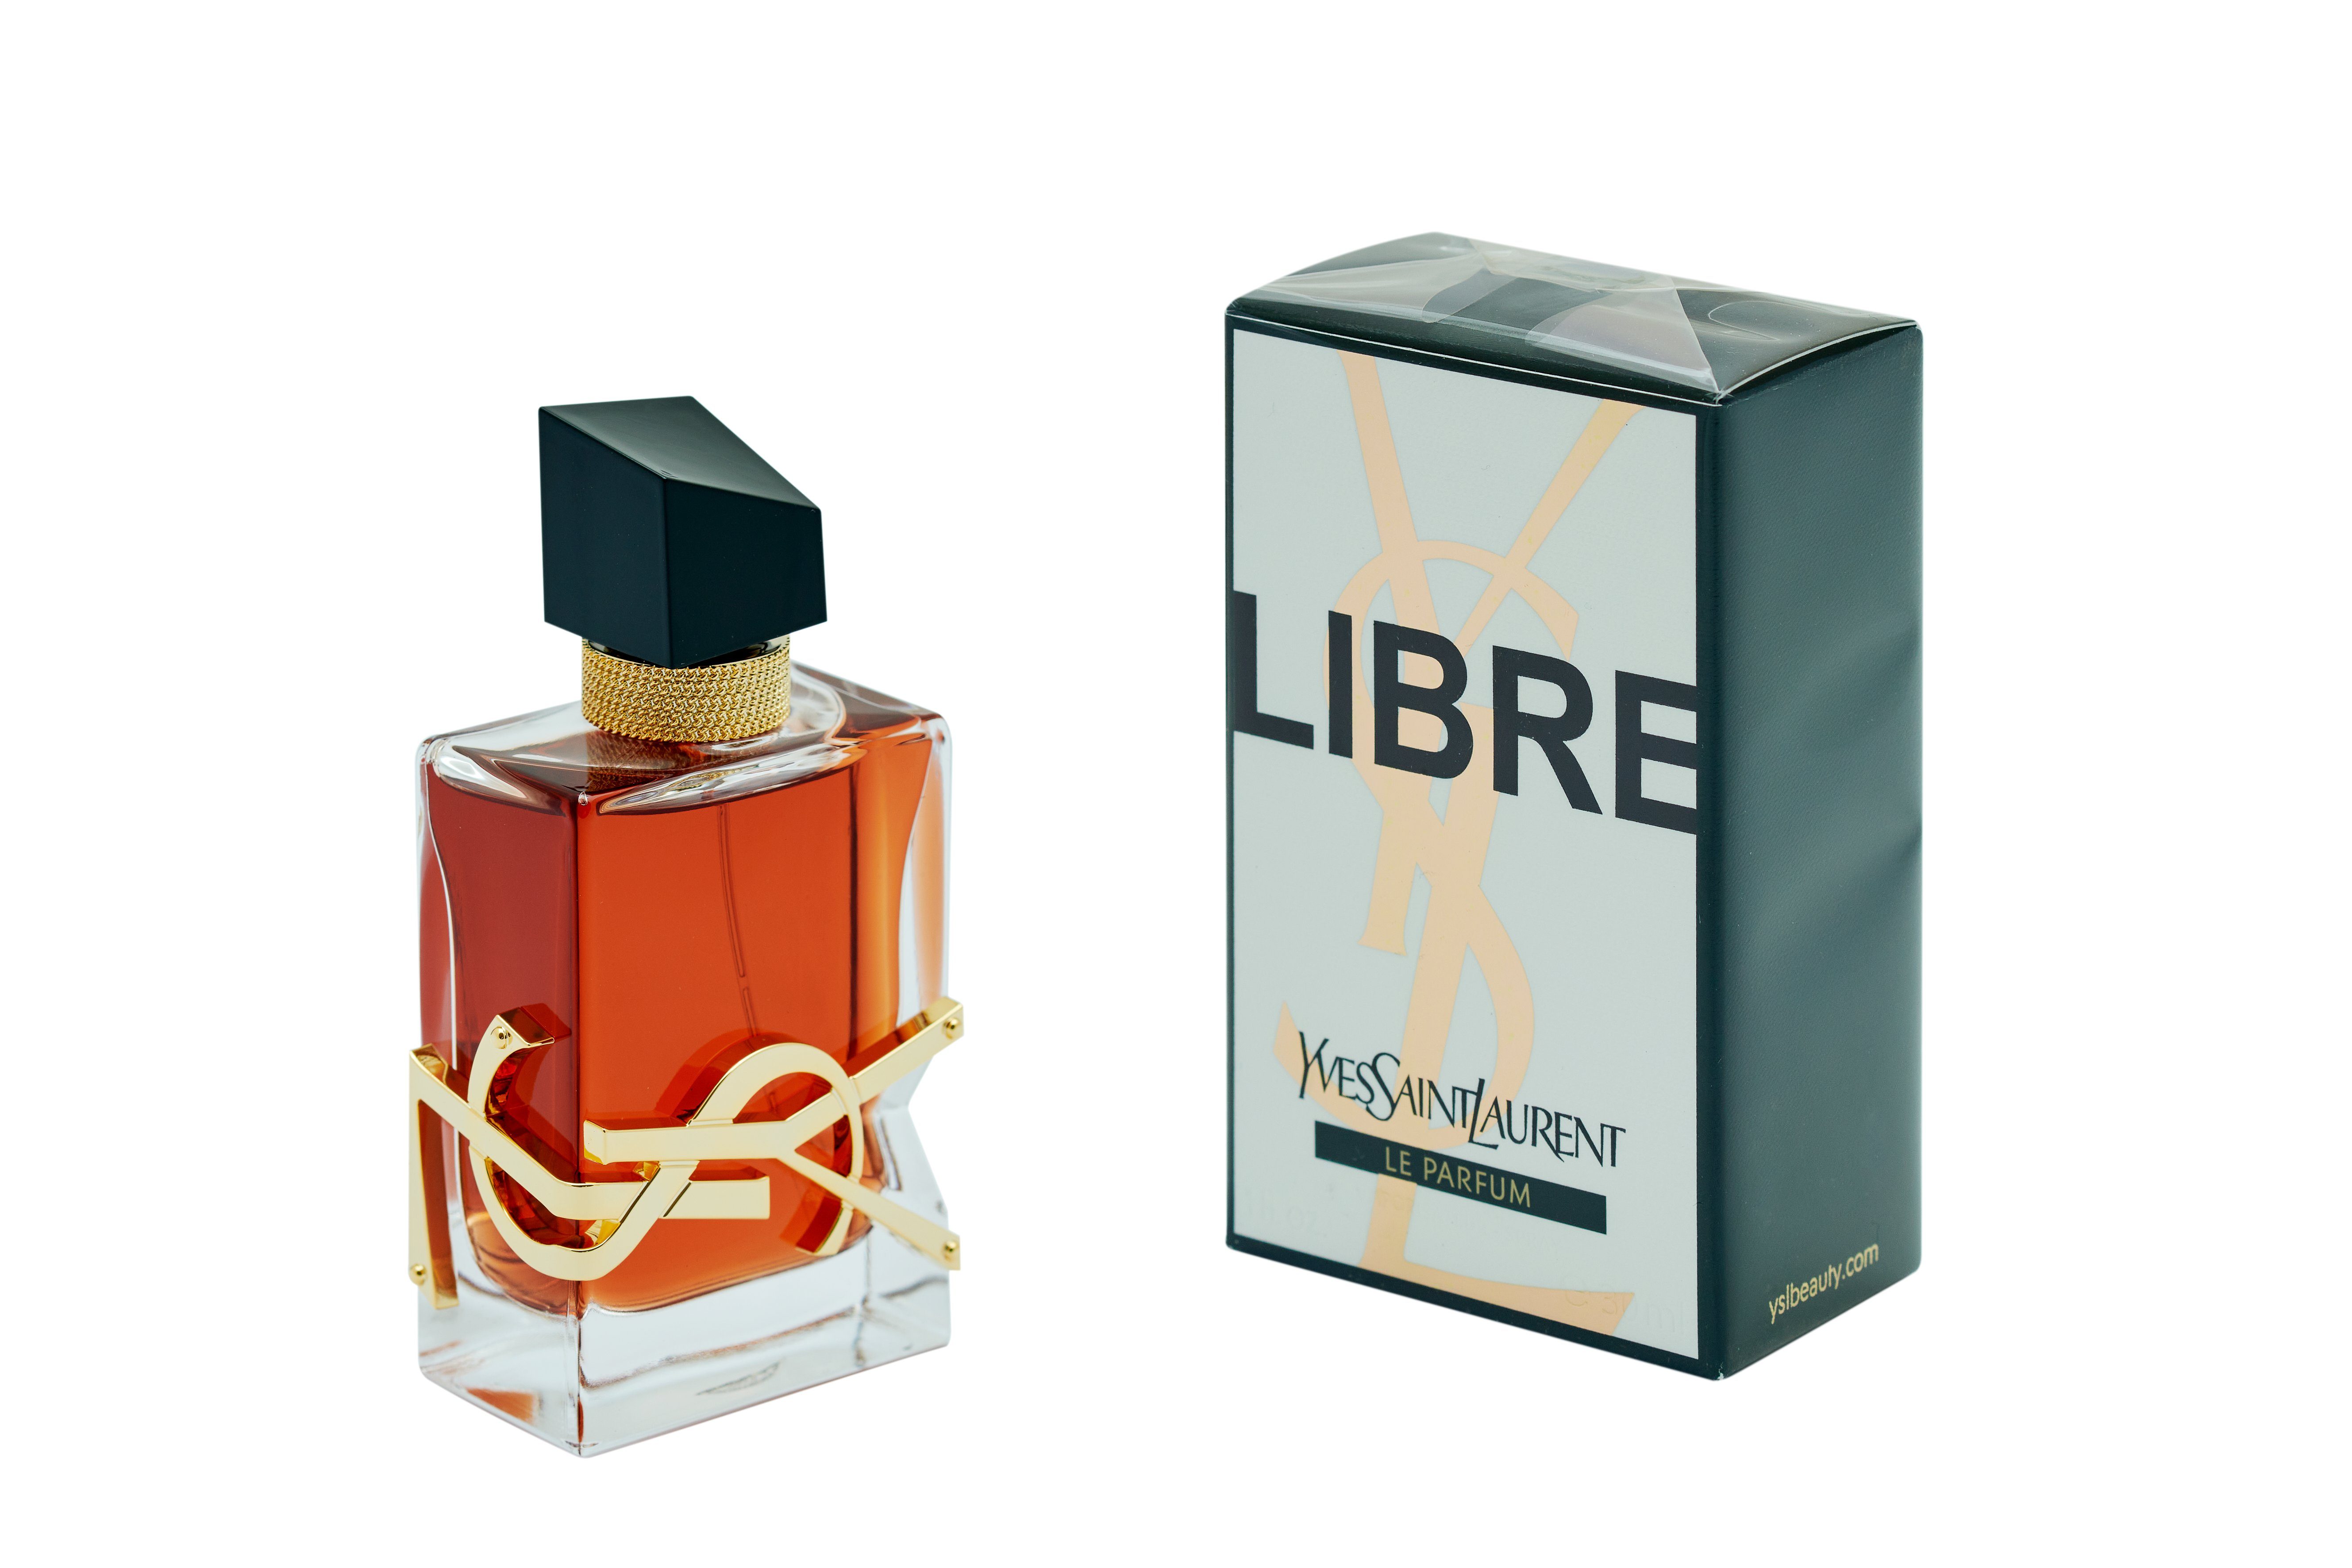 Libre Saint Yves Le LAURENT Laurent Parfum Extrait Spray Parfum YVES SAINT